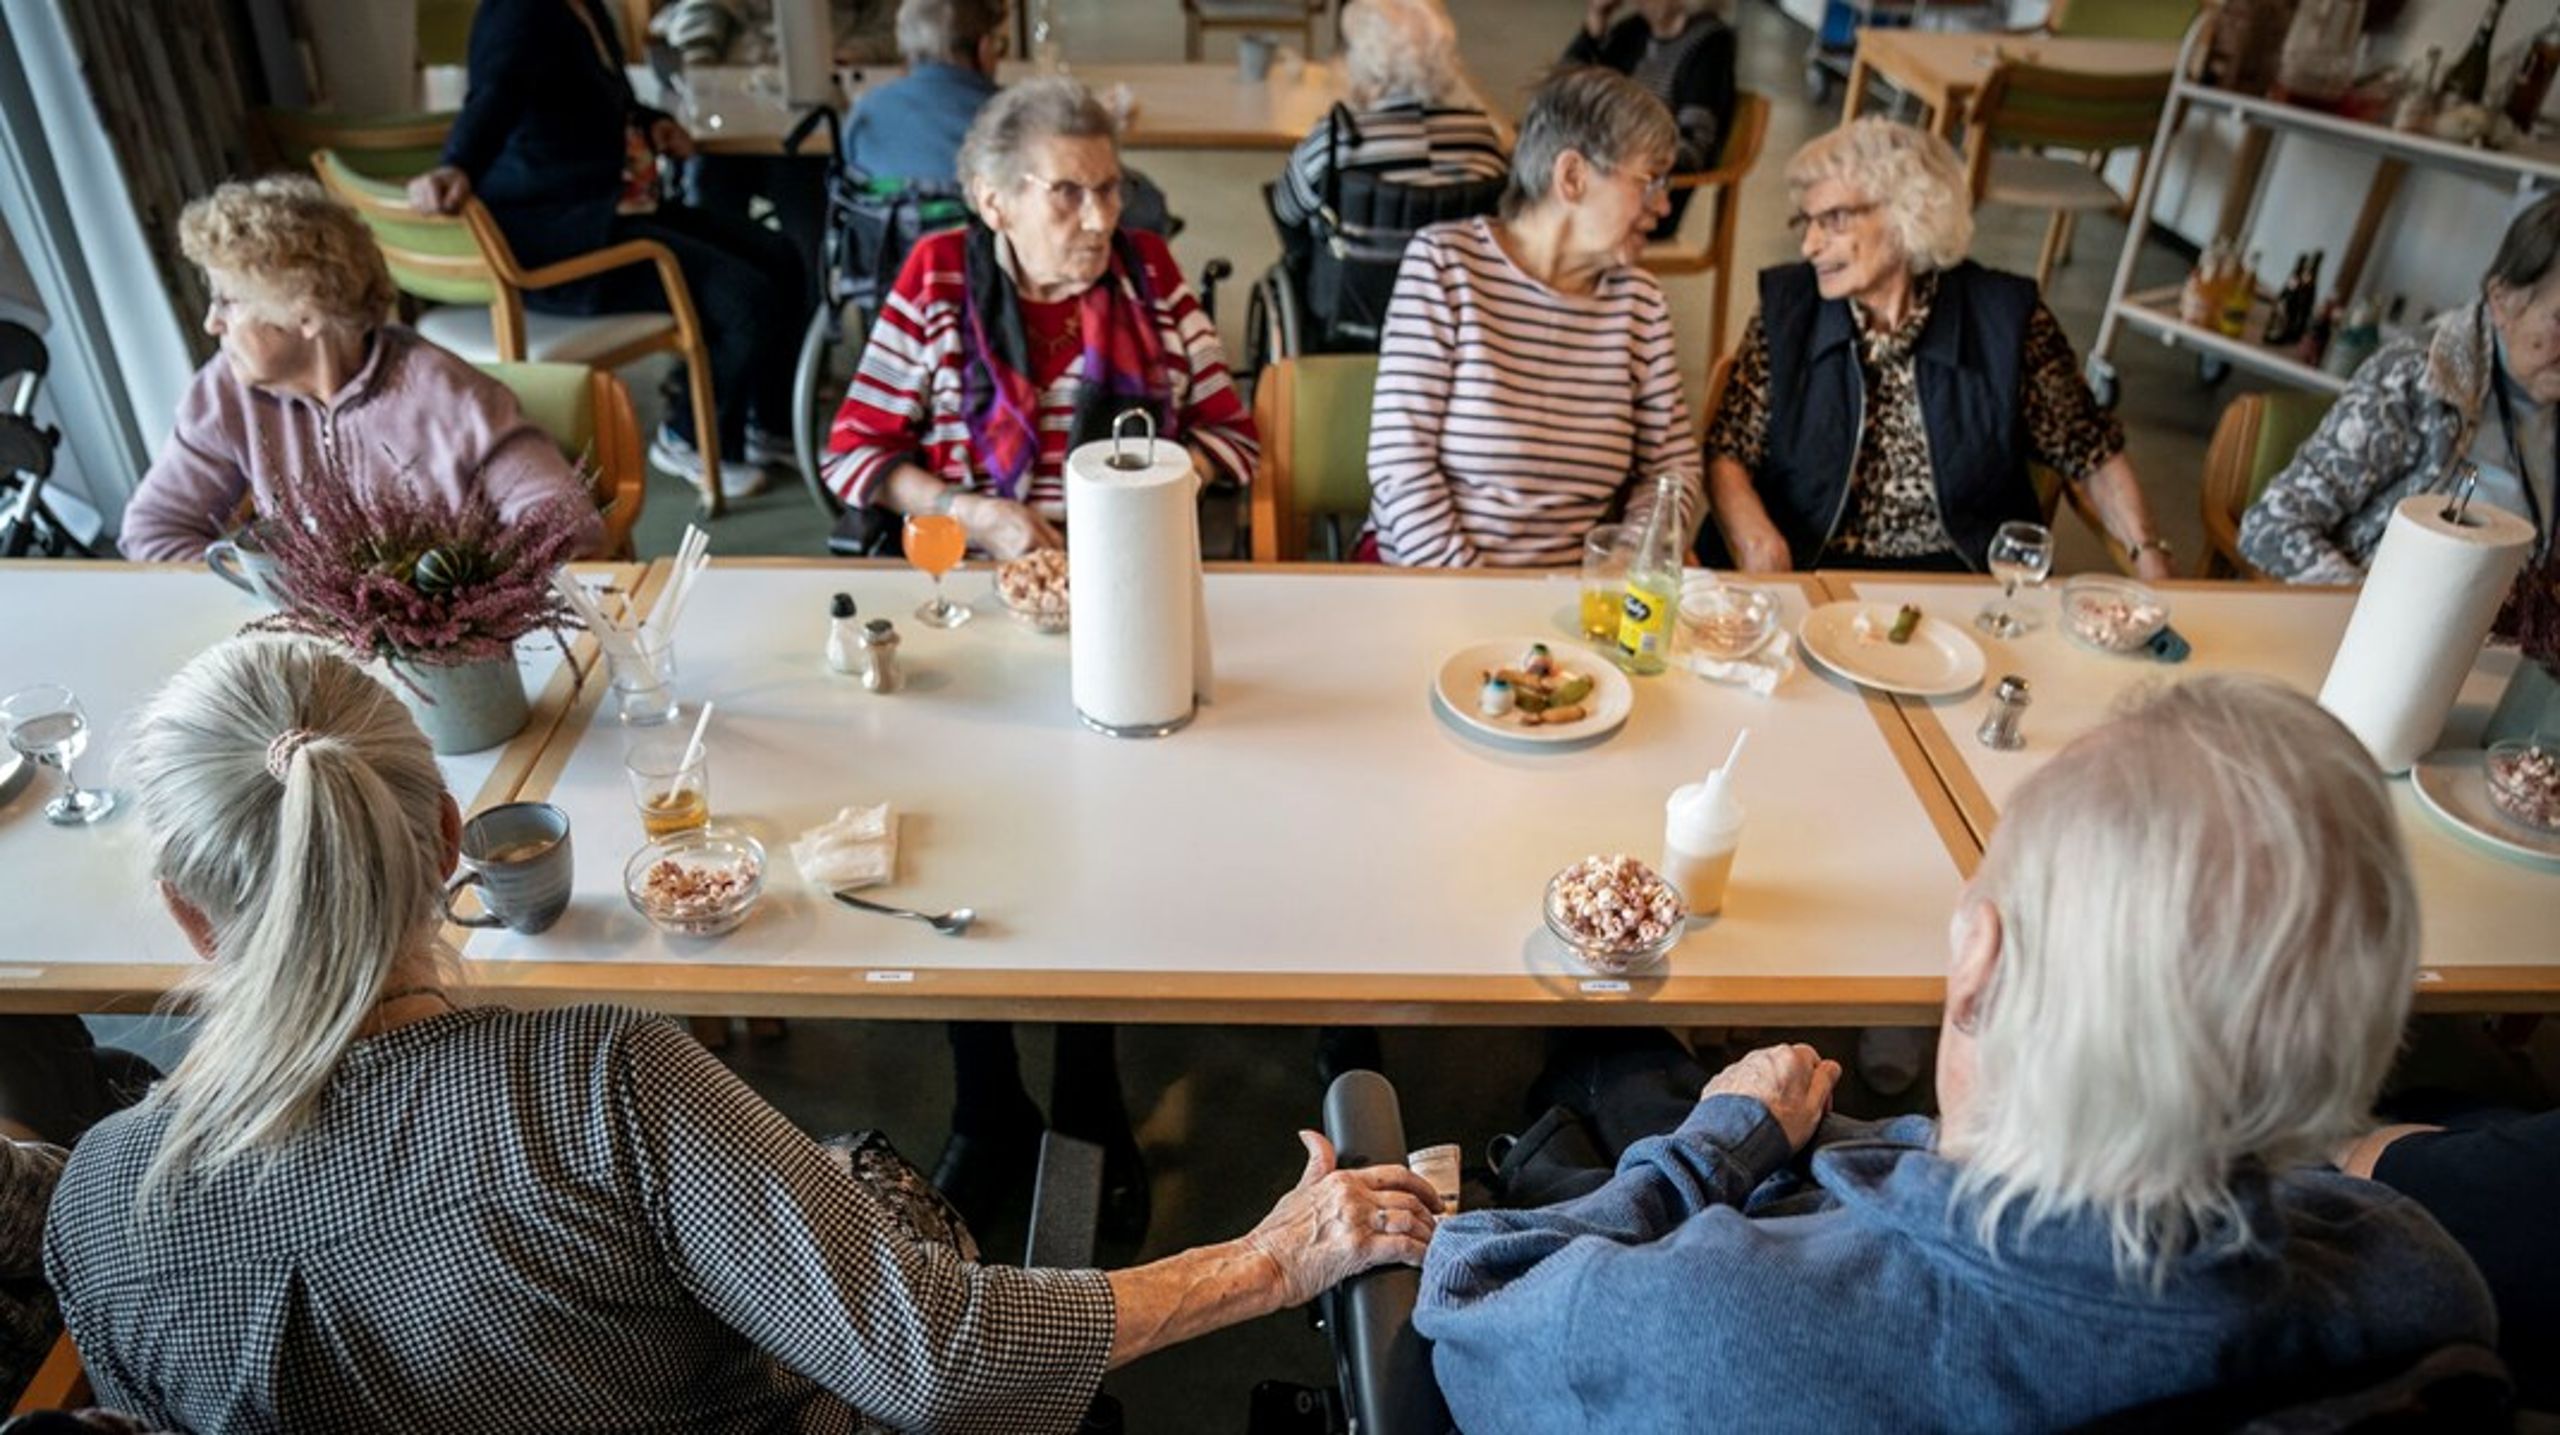 Ældre Sagen, Danske Patienter og Danske Handikaporganisationer vil samle driften og ansvaret for landets plejehjem under én, ny samlende myndighed.